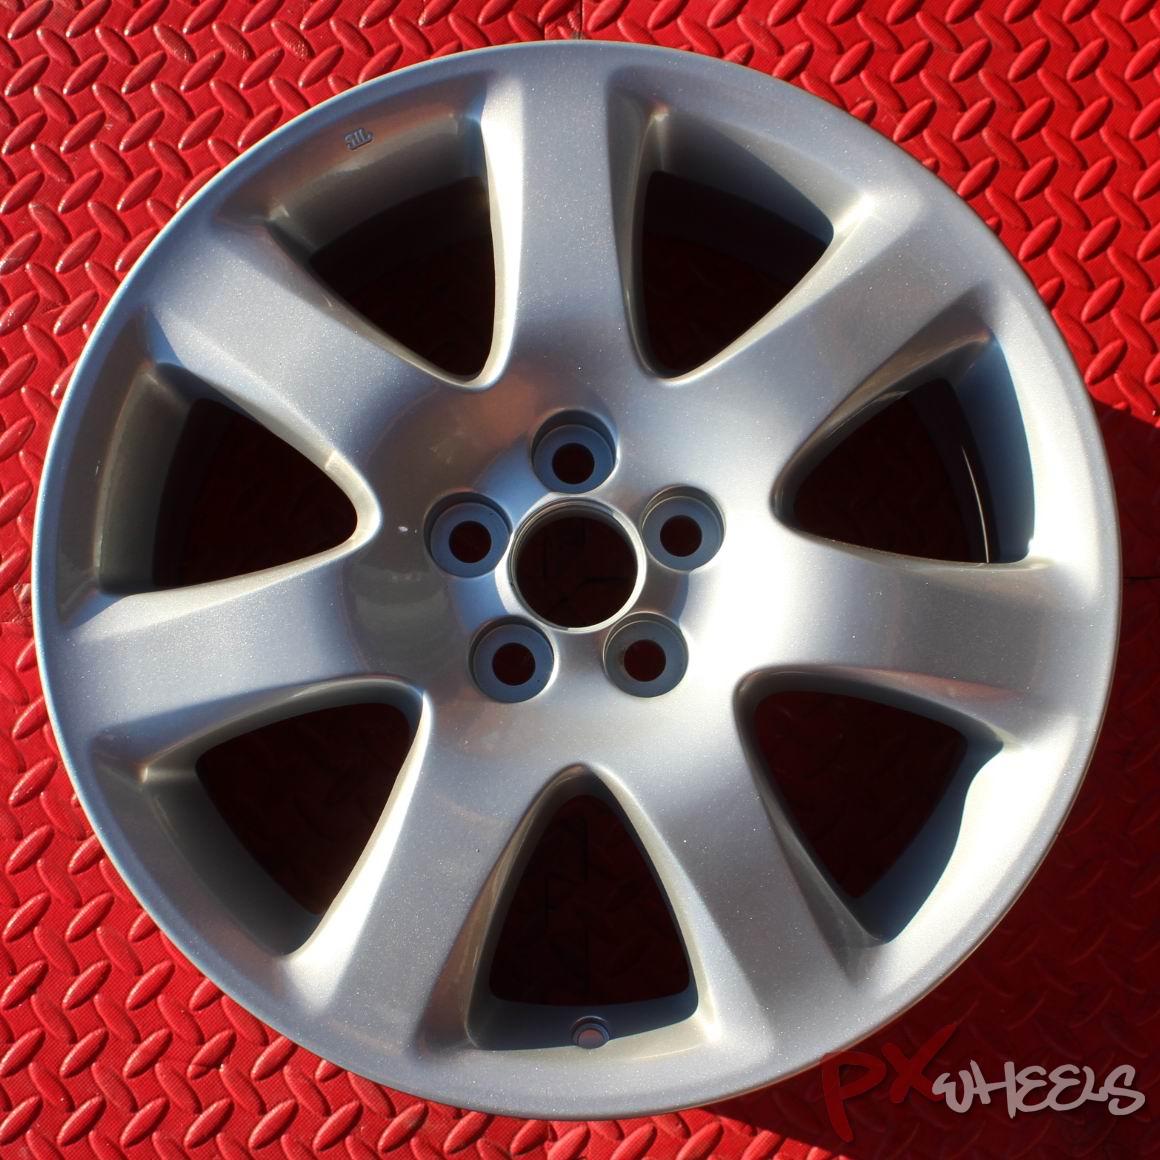 Toyota Avensis 7 Spoke Alloy Wheel